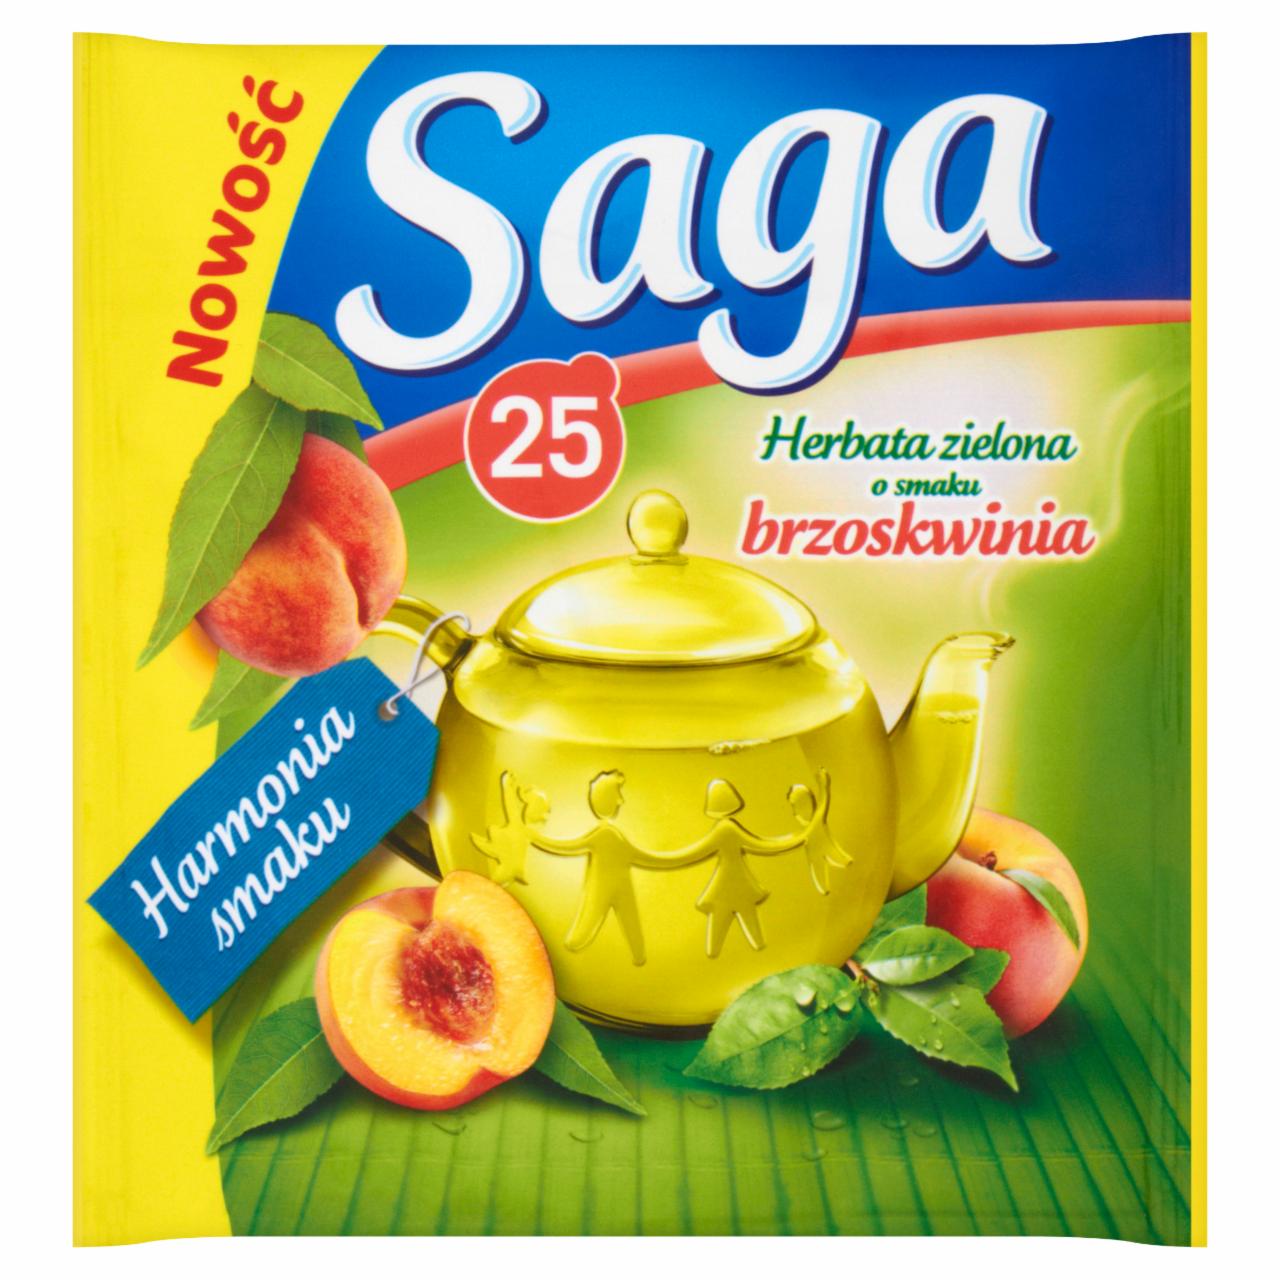 Zdjęcia - Saga Herbata zielona o smaku brzoskwinia 32,5 g (25 torebek)